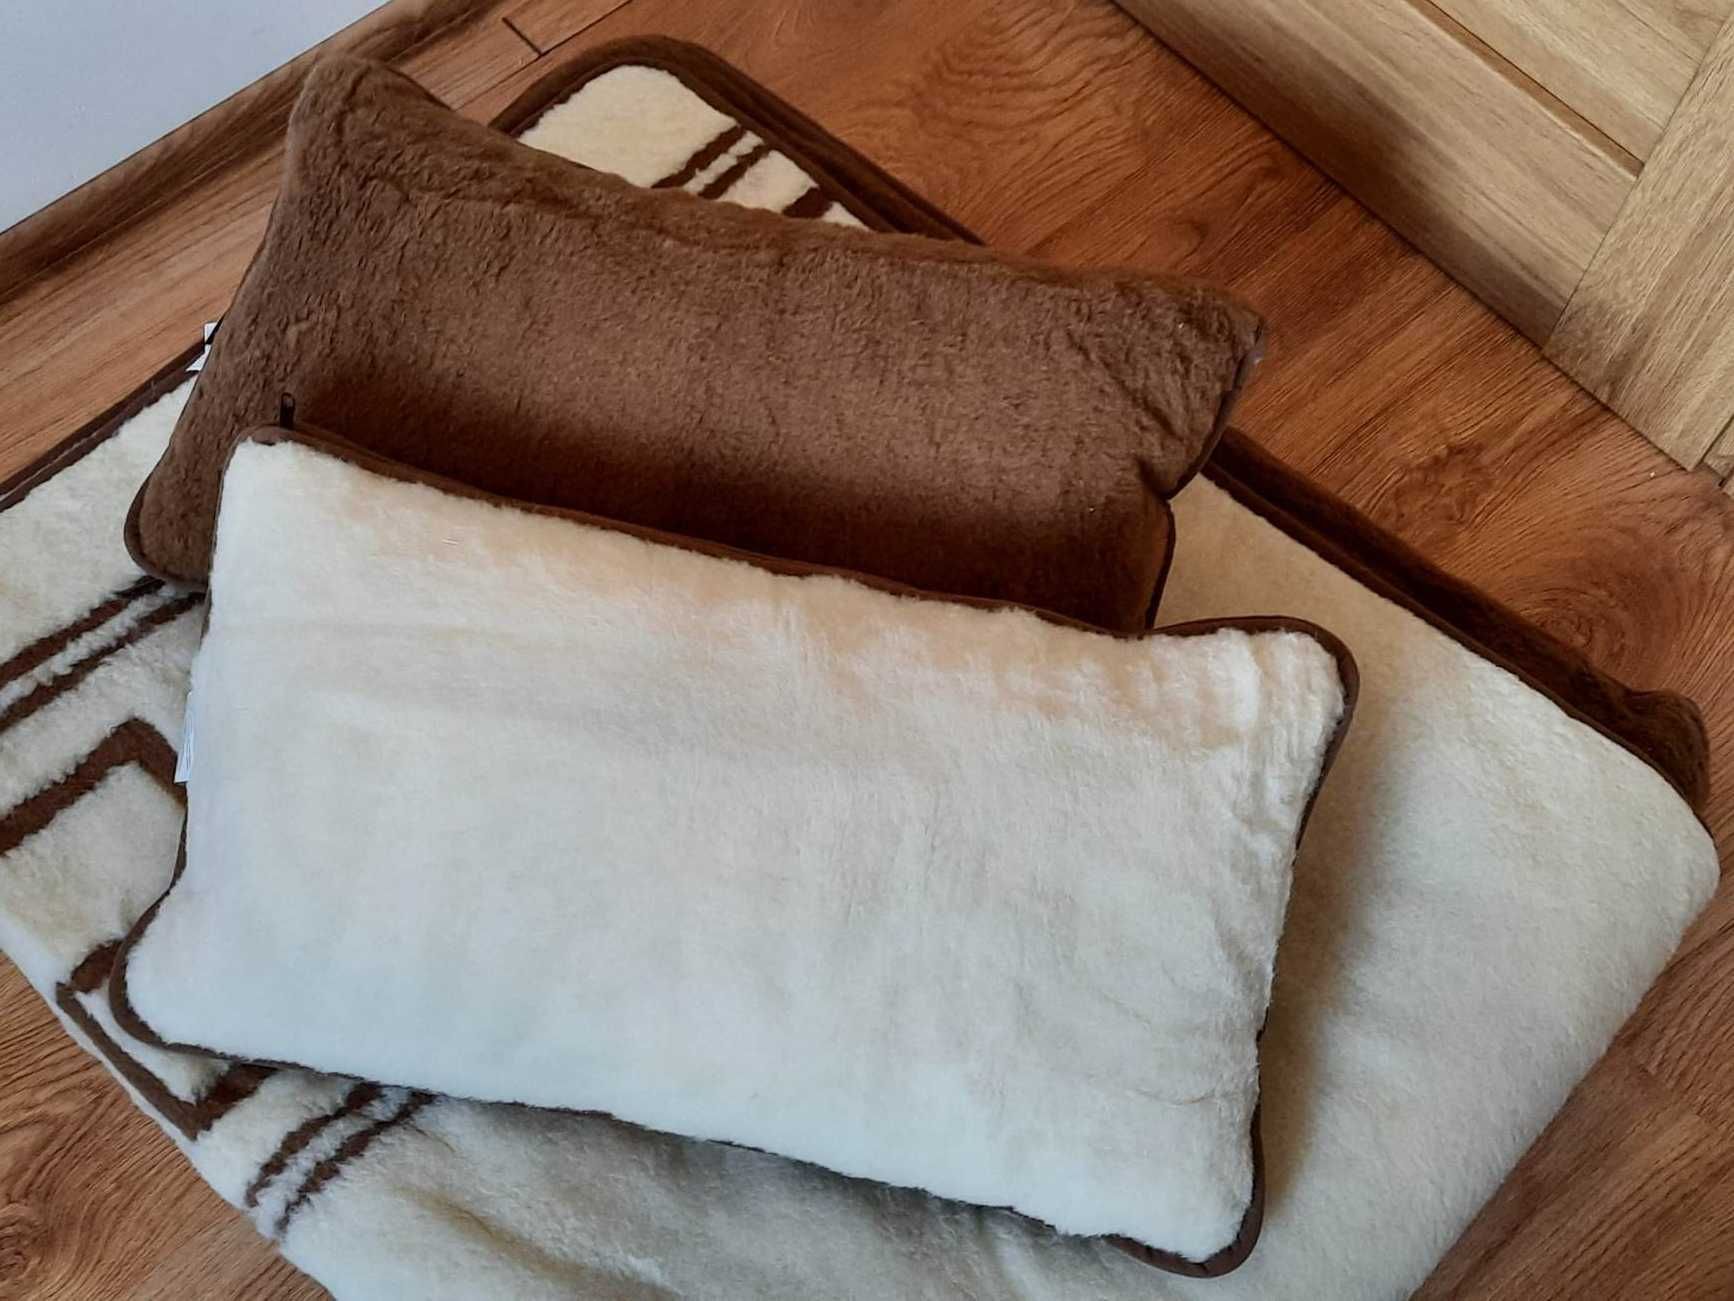 Woolmark - materac, kołdra i 2 x poduszki.